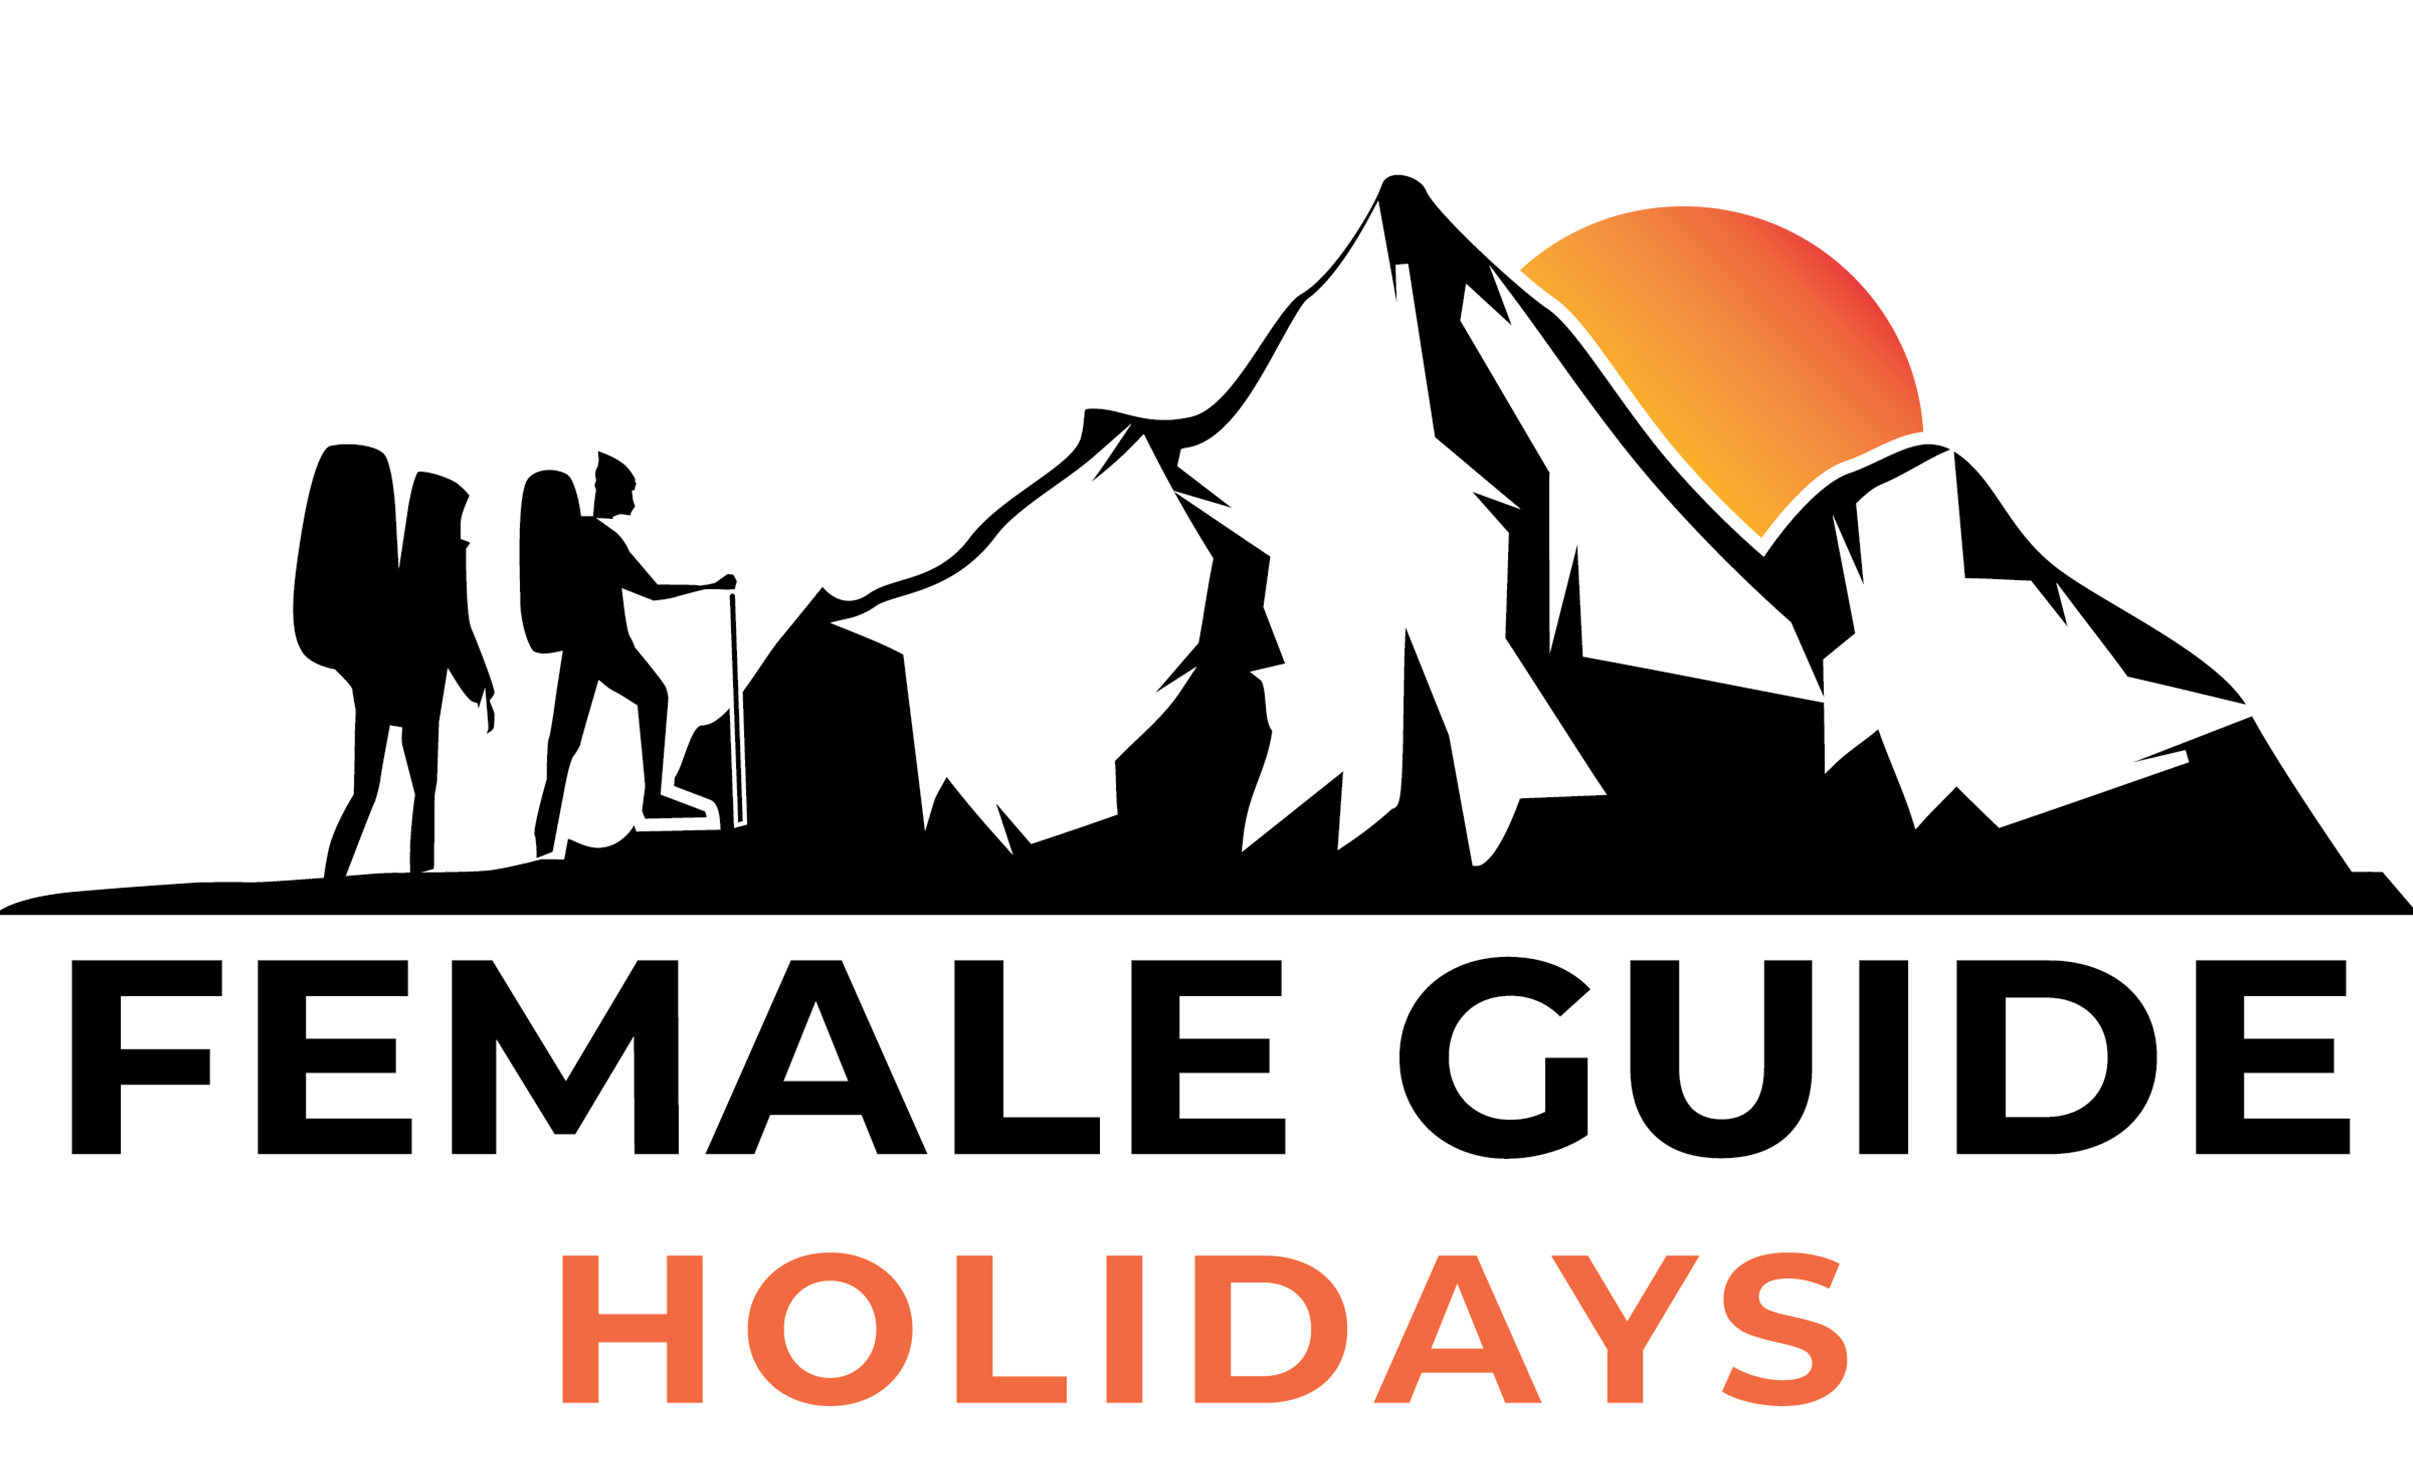 female guide Kathmandu, female guide holiday, female guide in nepal